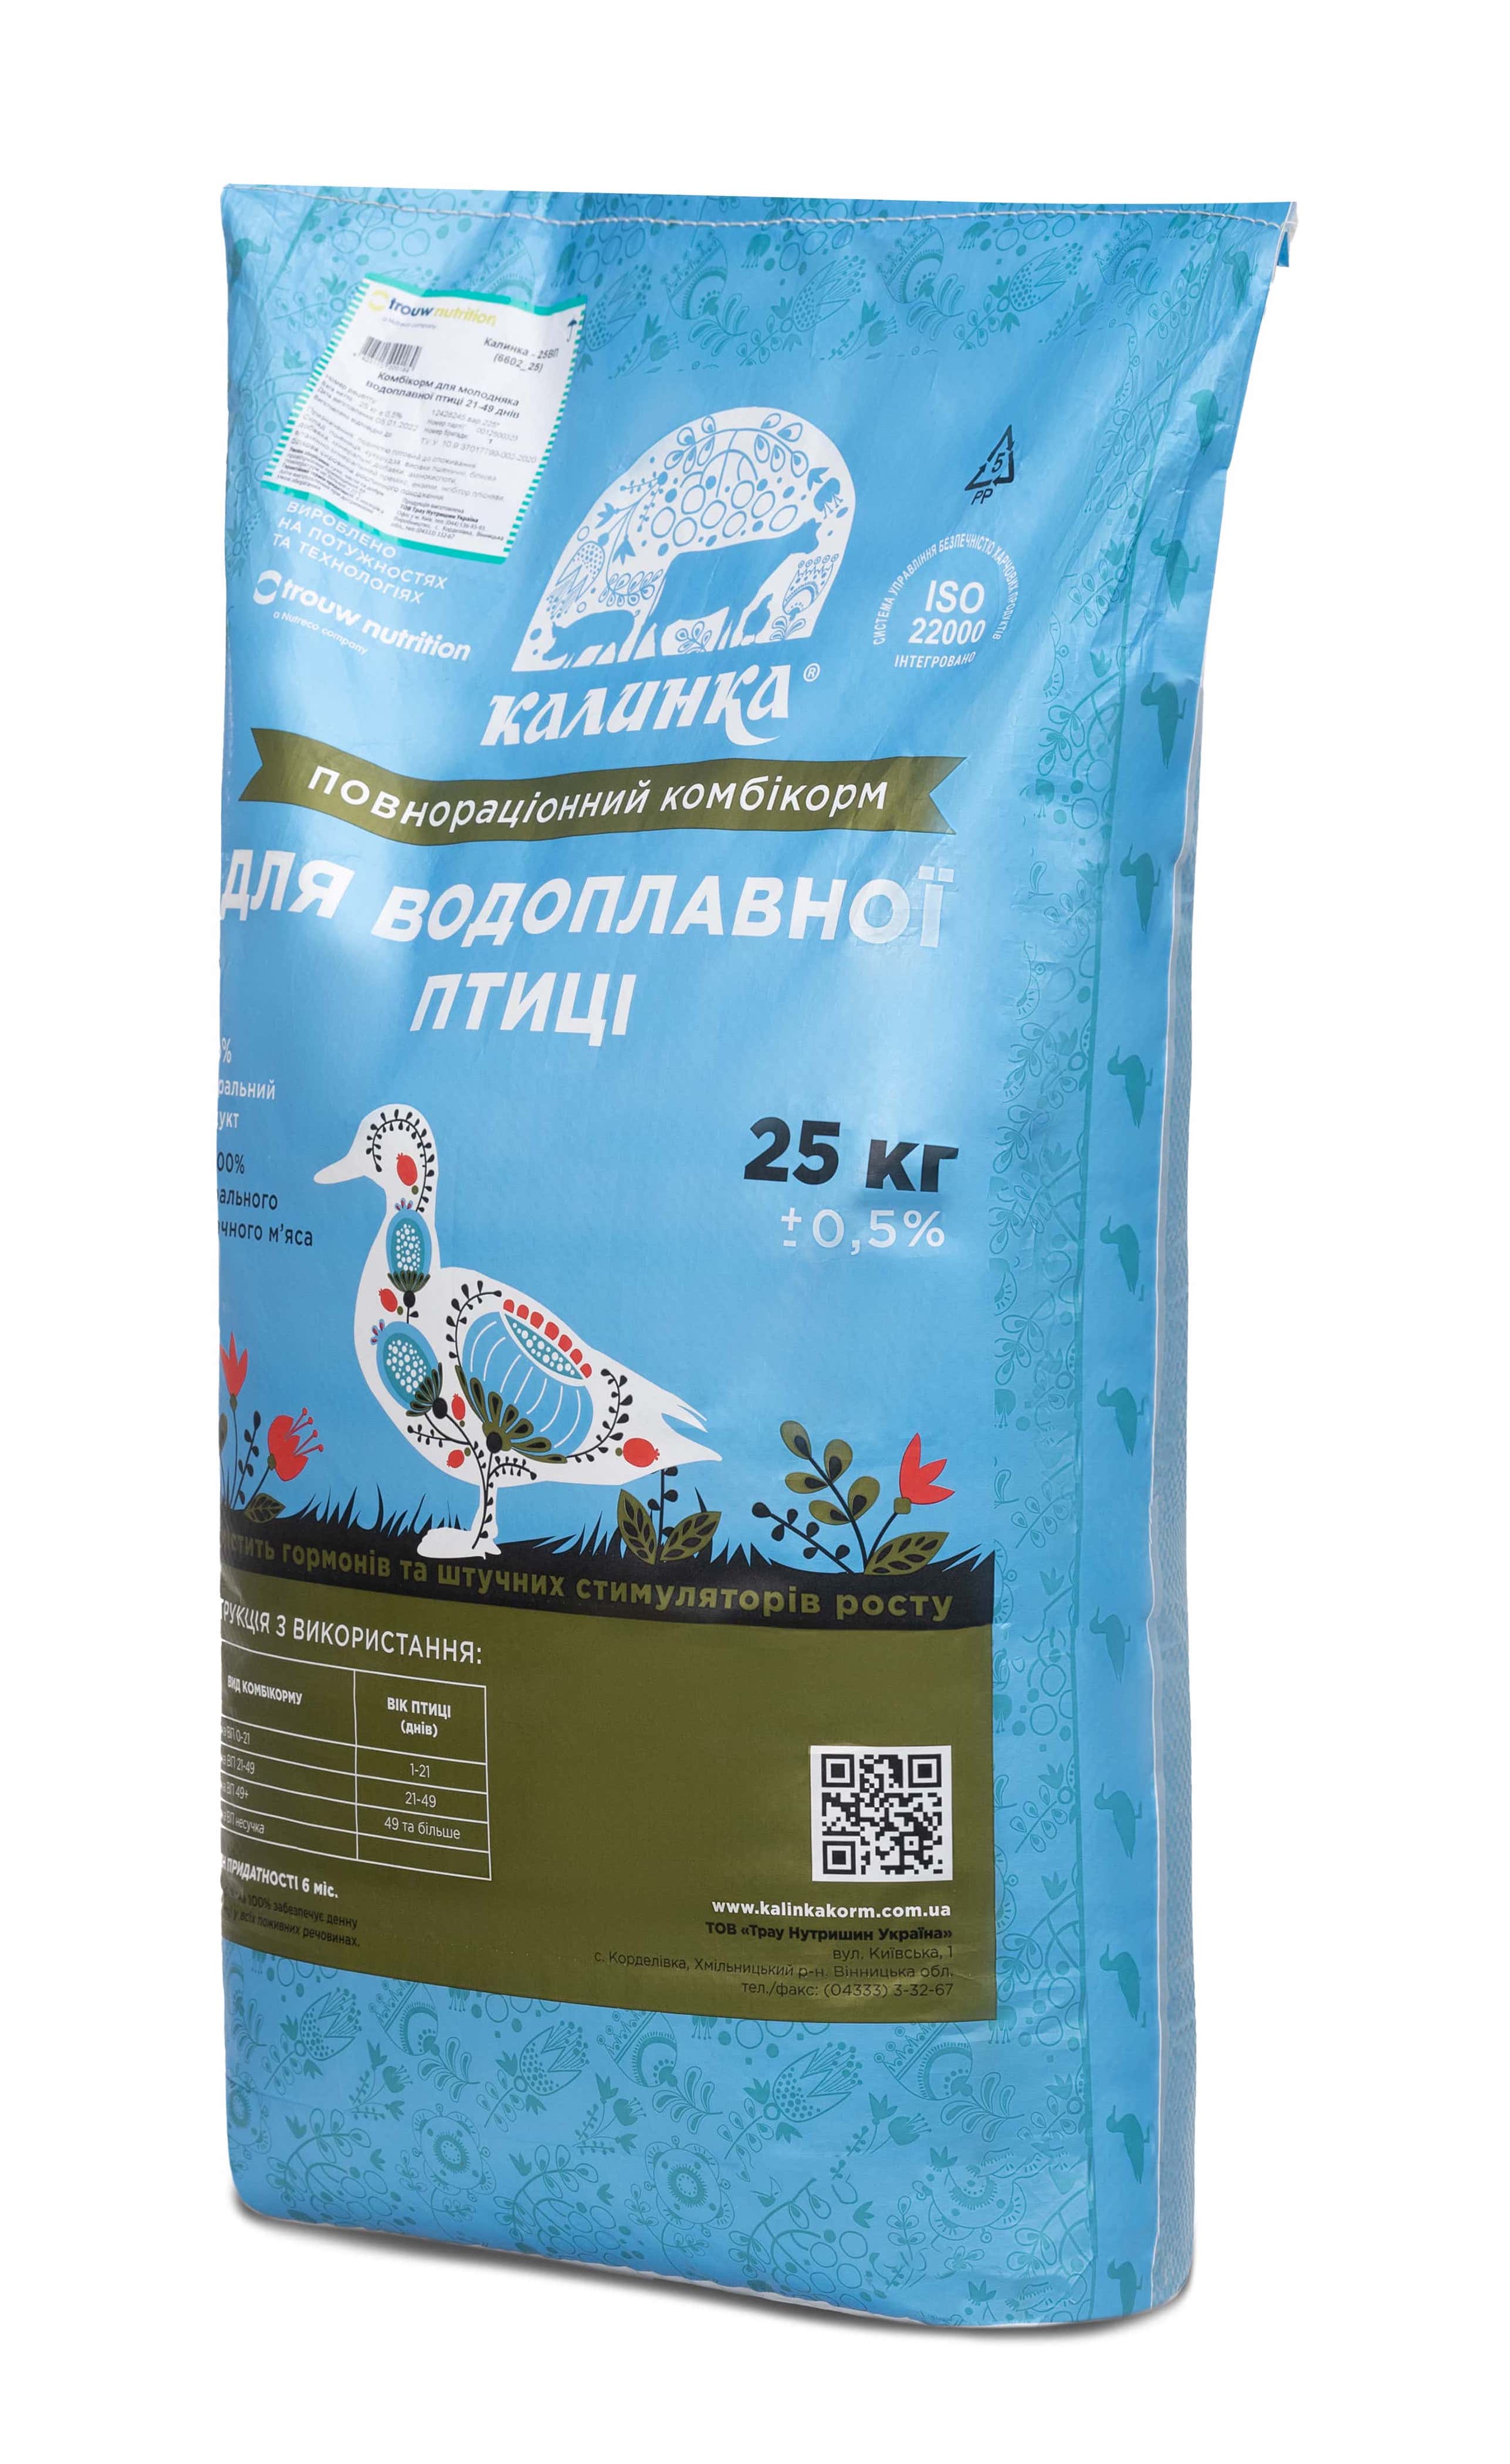 Калинка-25 КТ 30% ВП стартер (6617), 25 кг